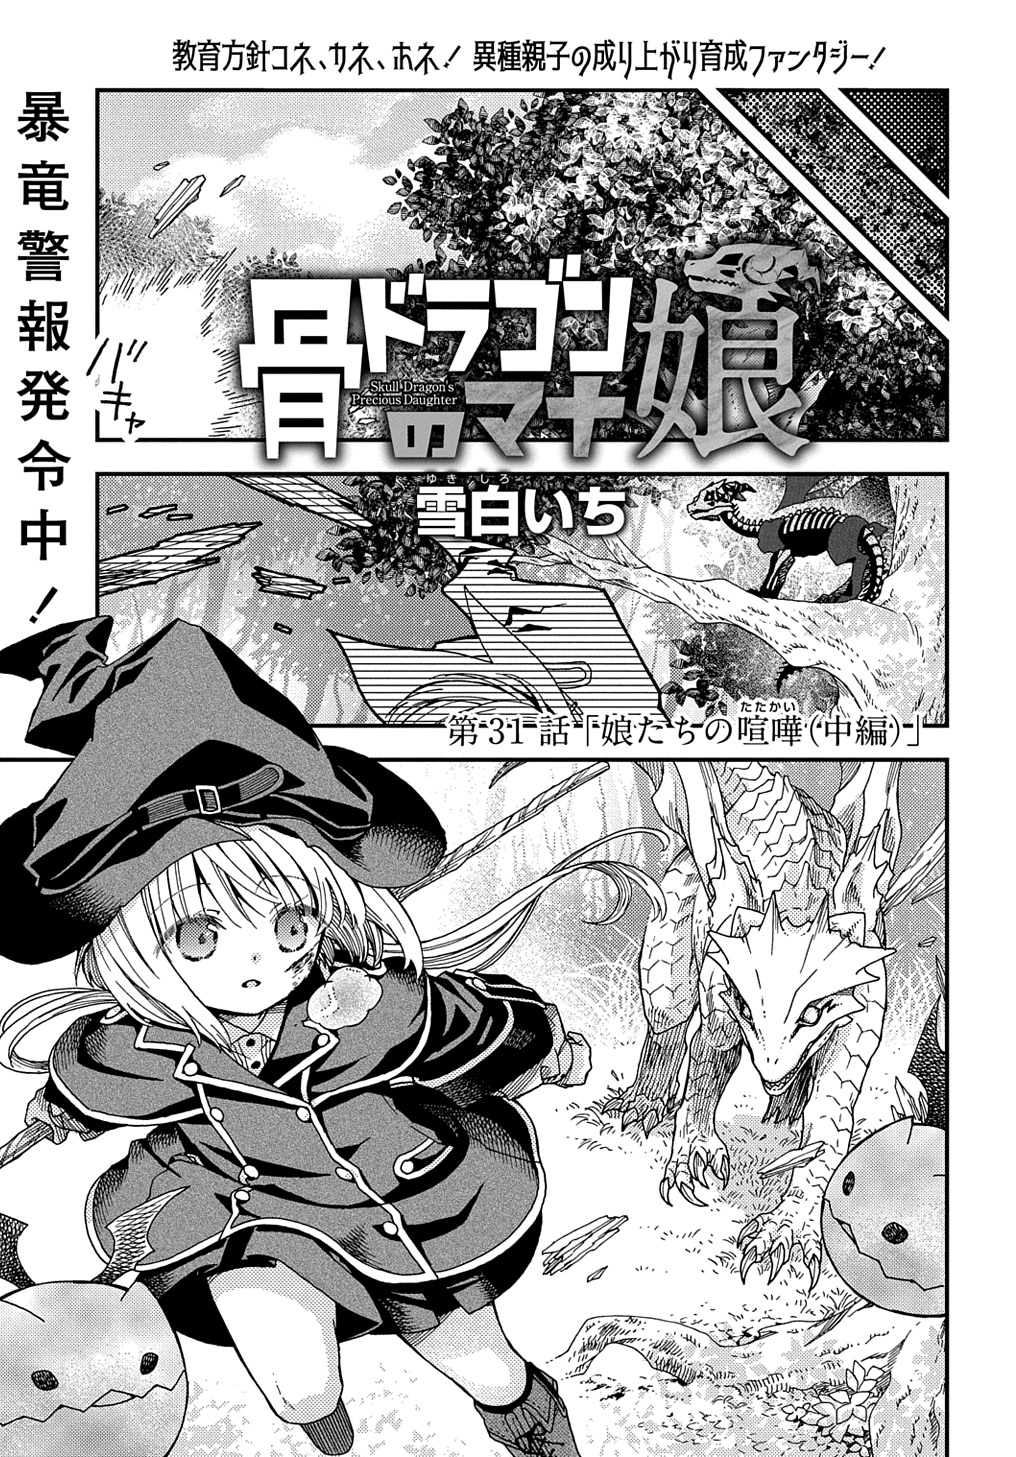 Hone Dragon no Mana Musume - Chapter 31.2 - Page 1